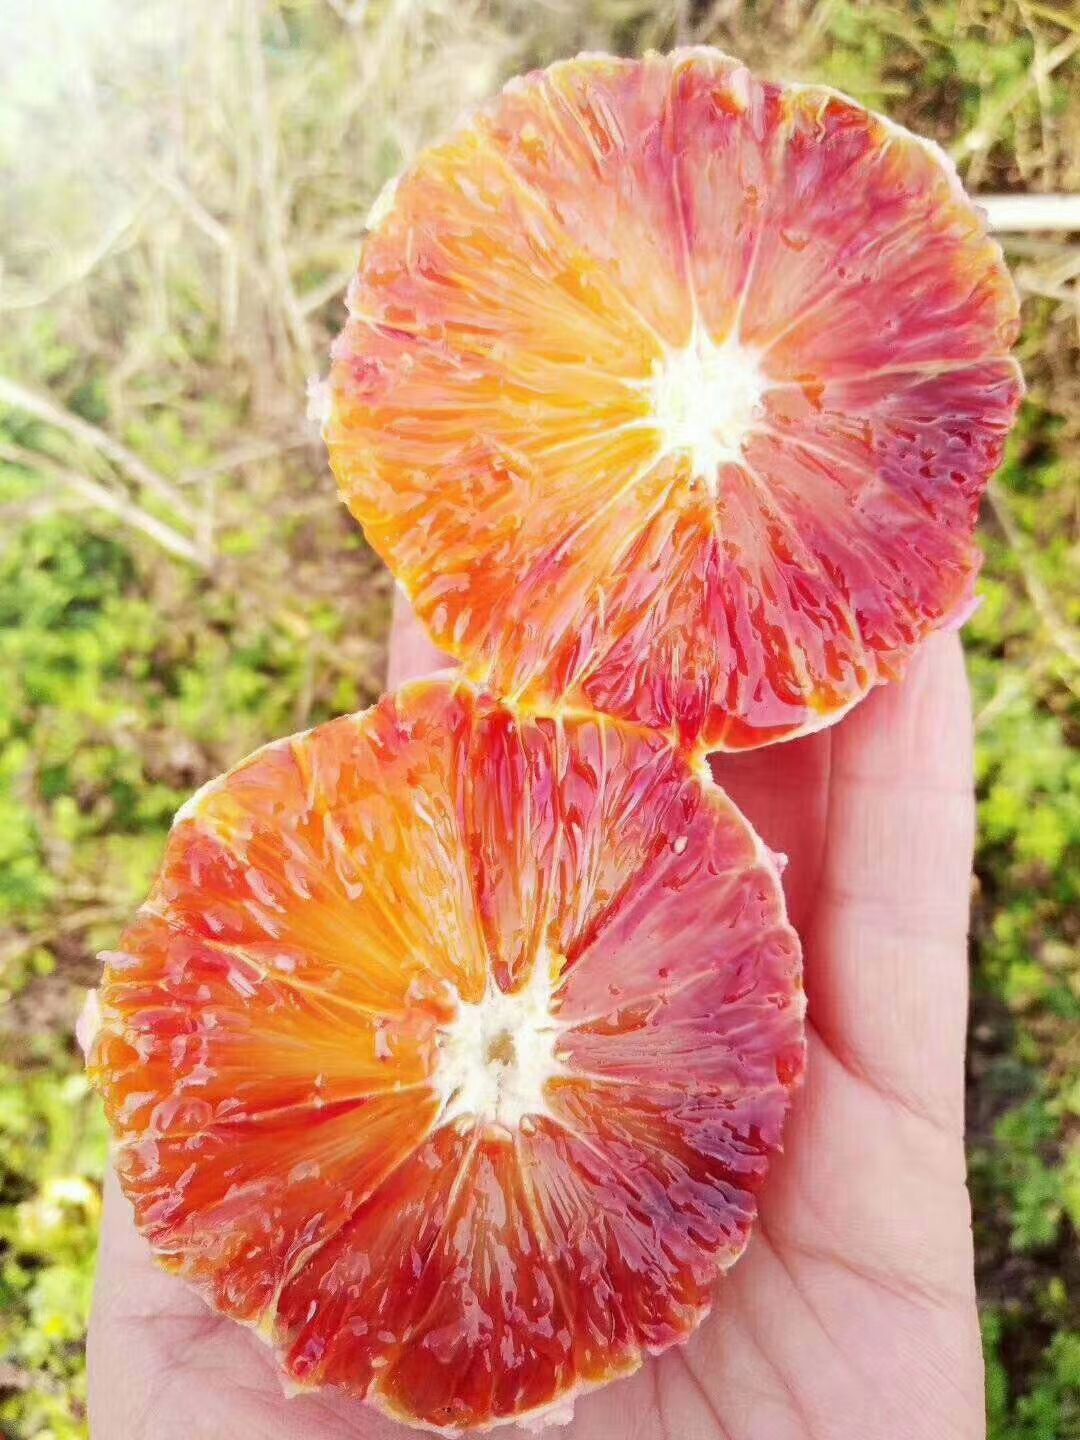 塔罗科血橙 血橙 55 - 60mm